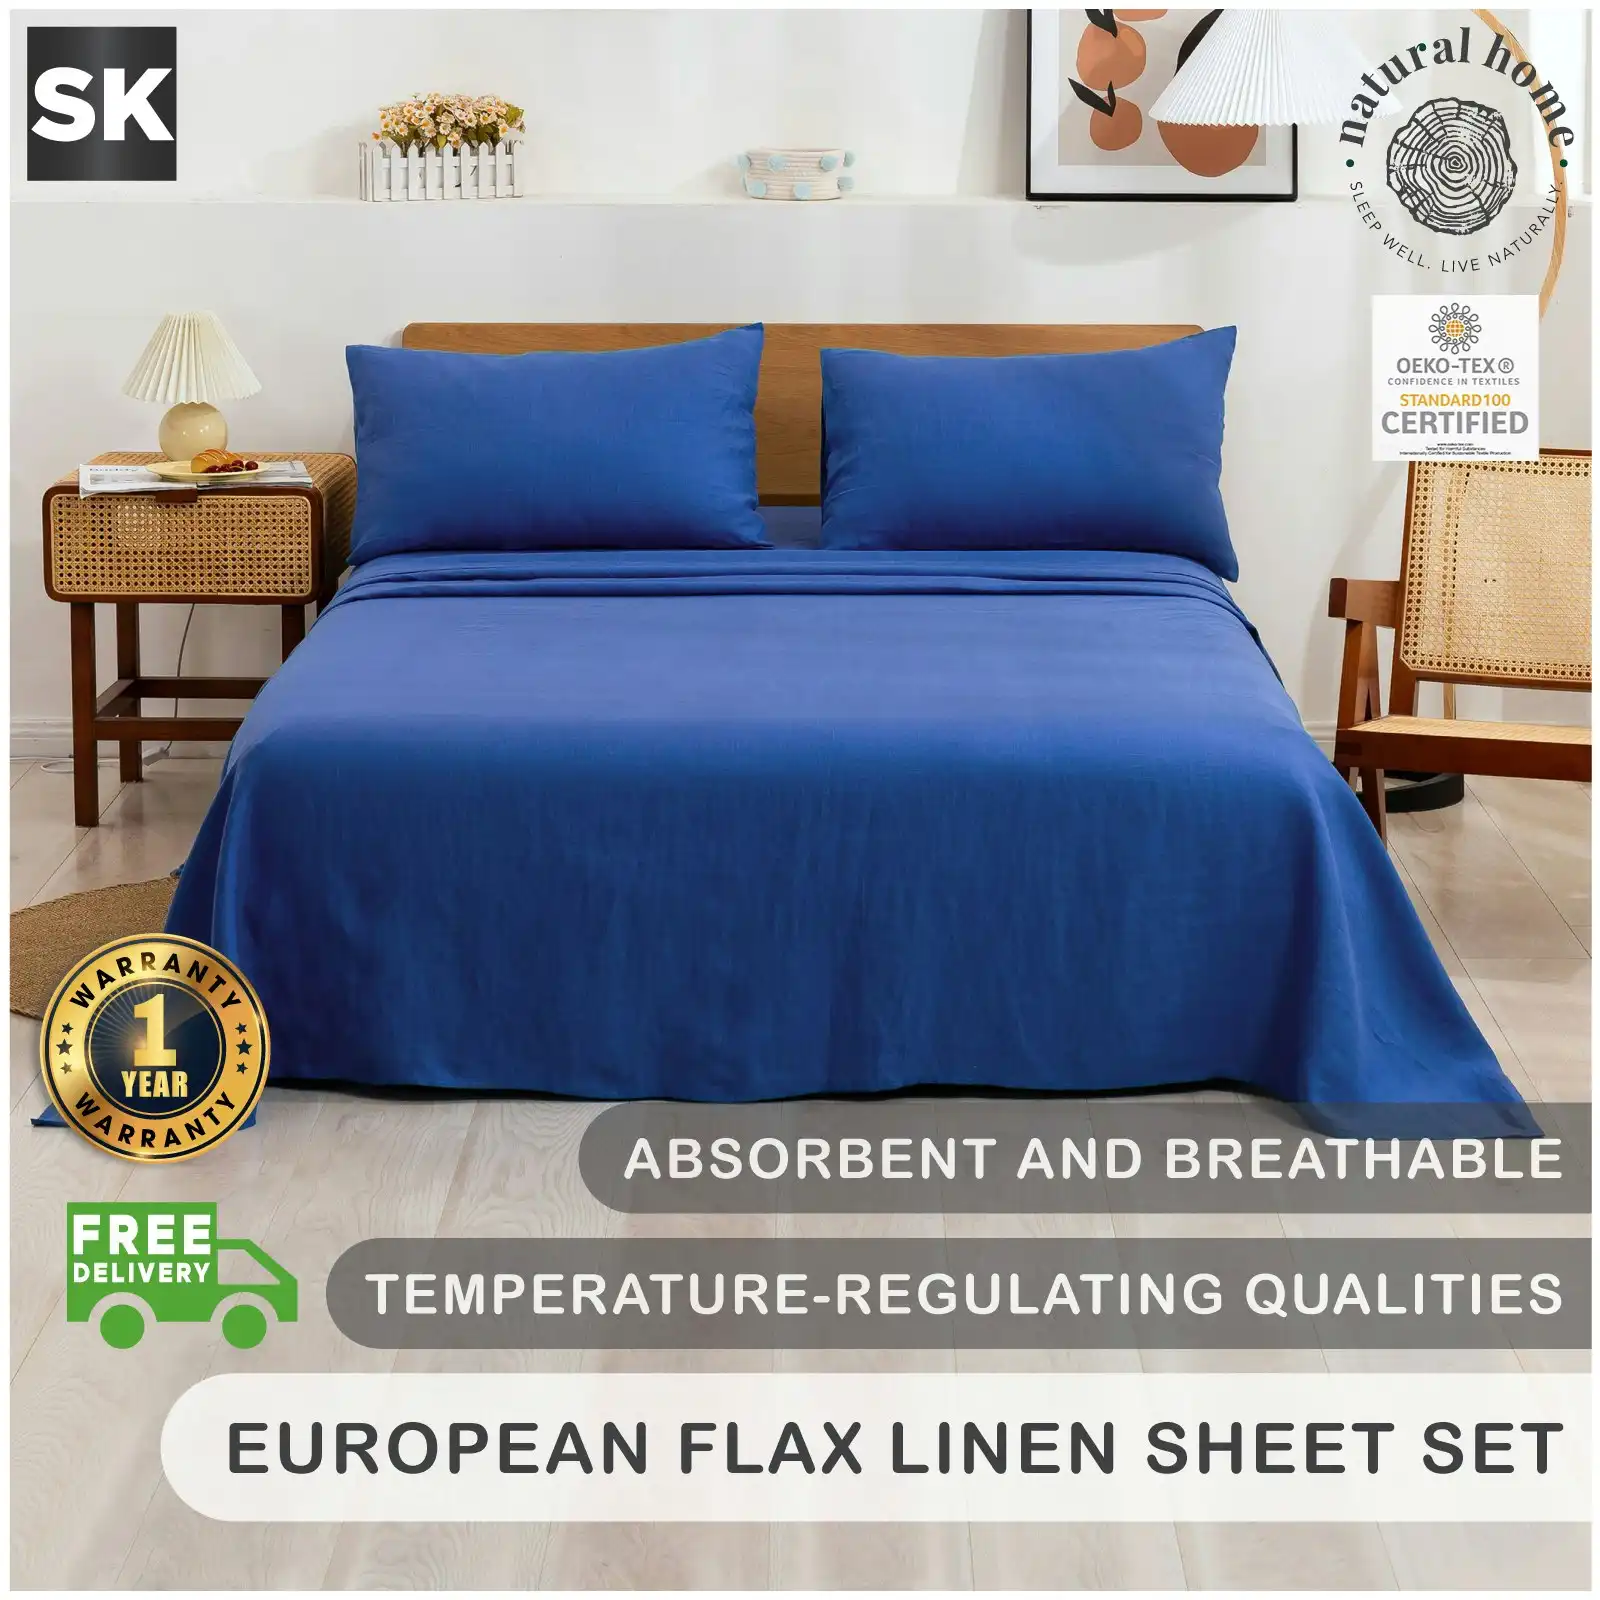 Natural Home 100% European Flax Linen Sheet Set - Deep Blue - Super King Bed